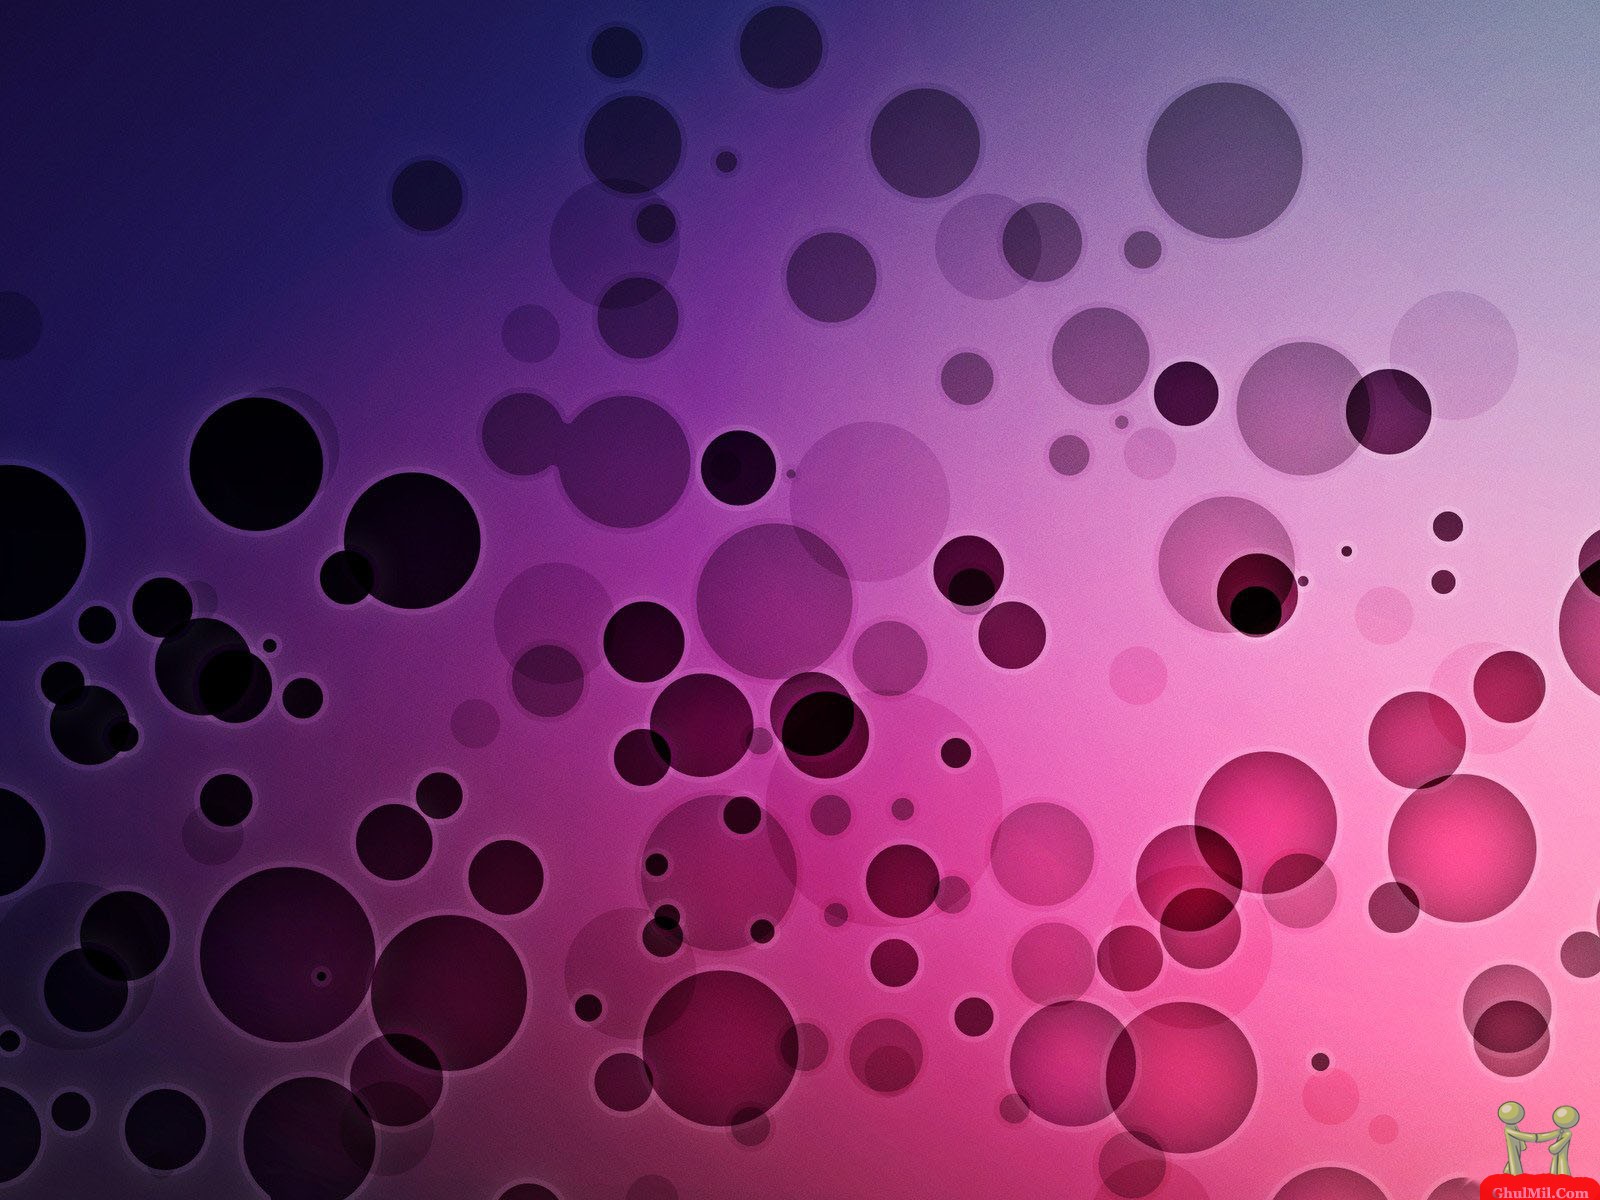 Bubbles Wallpaper Kewlwallpaper Image 3d